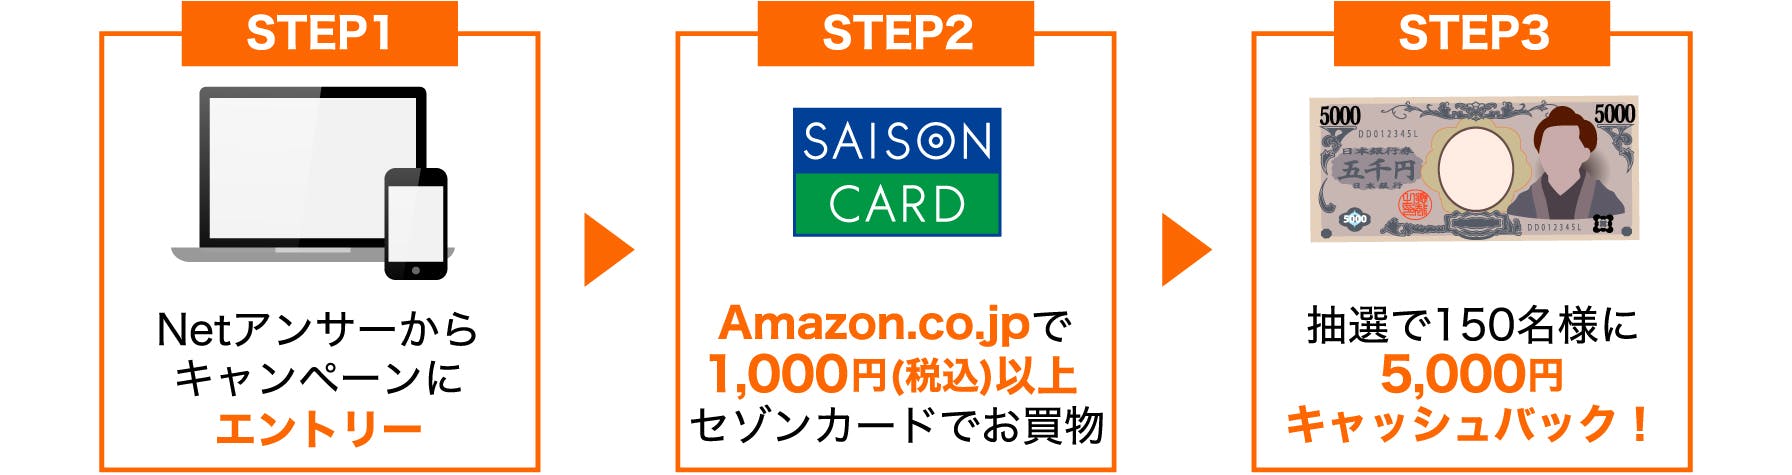 STEP1　Netアンサーからキャンペーンにエントリー　STEP２　Amazon.co.jpで1,000円(税込)以上セゾンカードでお買物　STEP３　抽選で合計150名様に5,000円をキャッシュバック